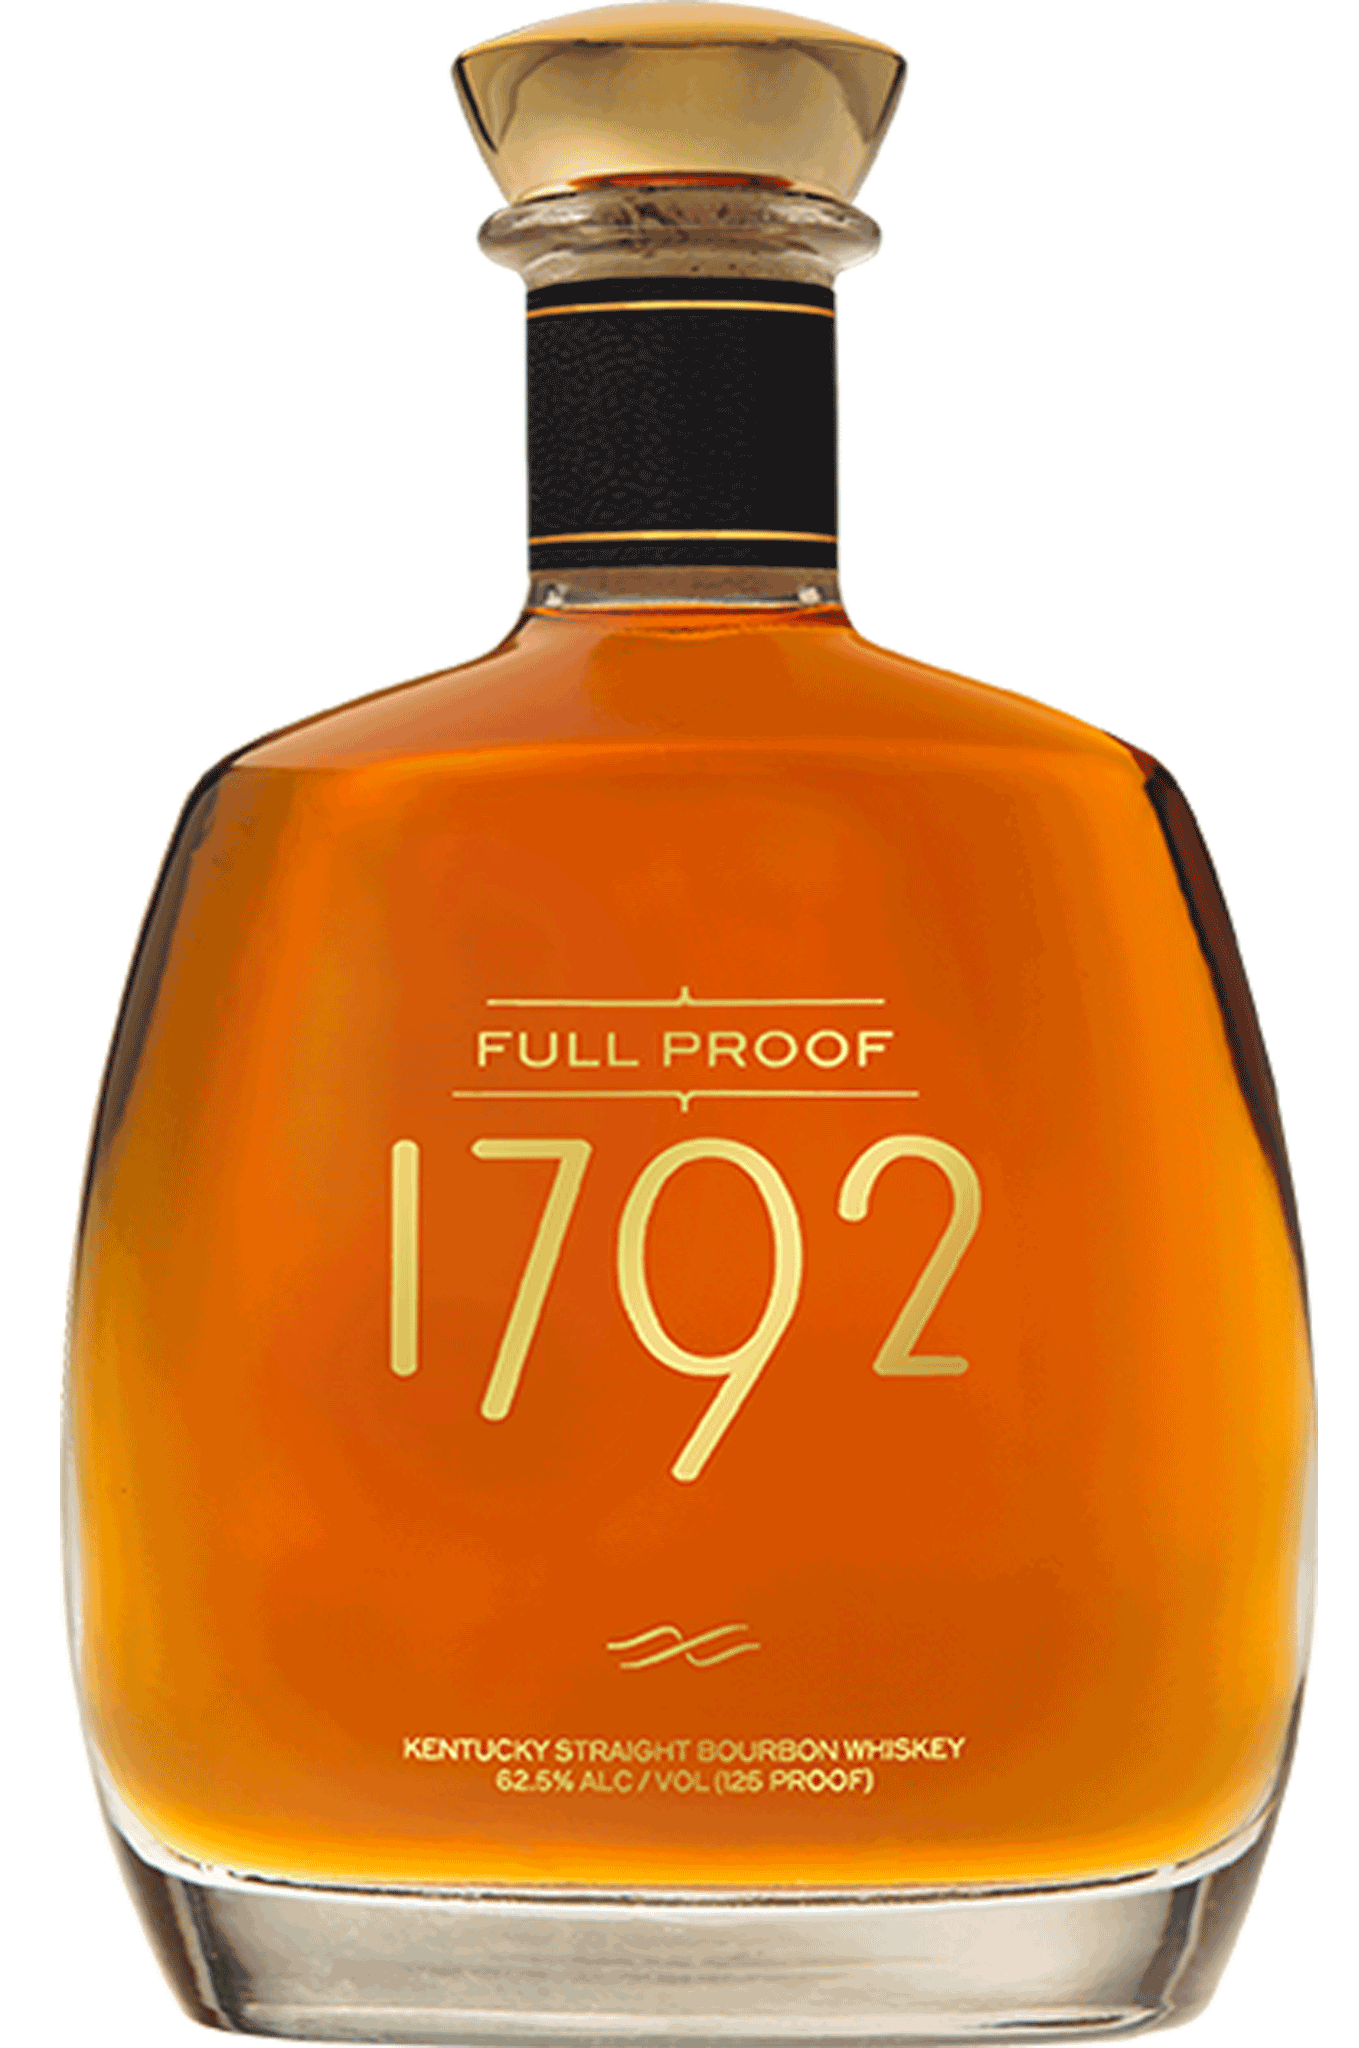 1792-whiskey-full-proof